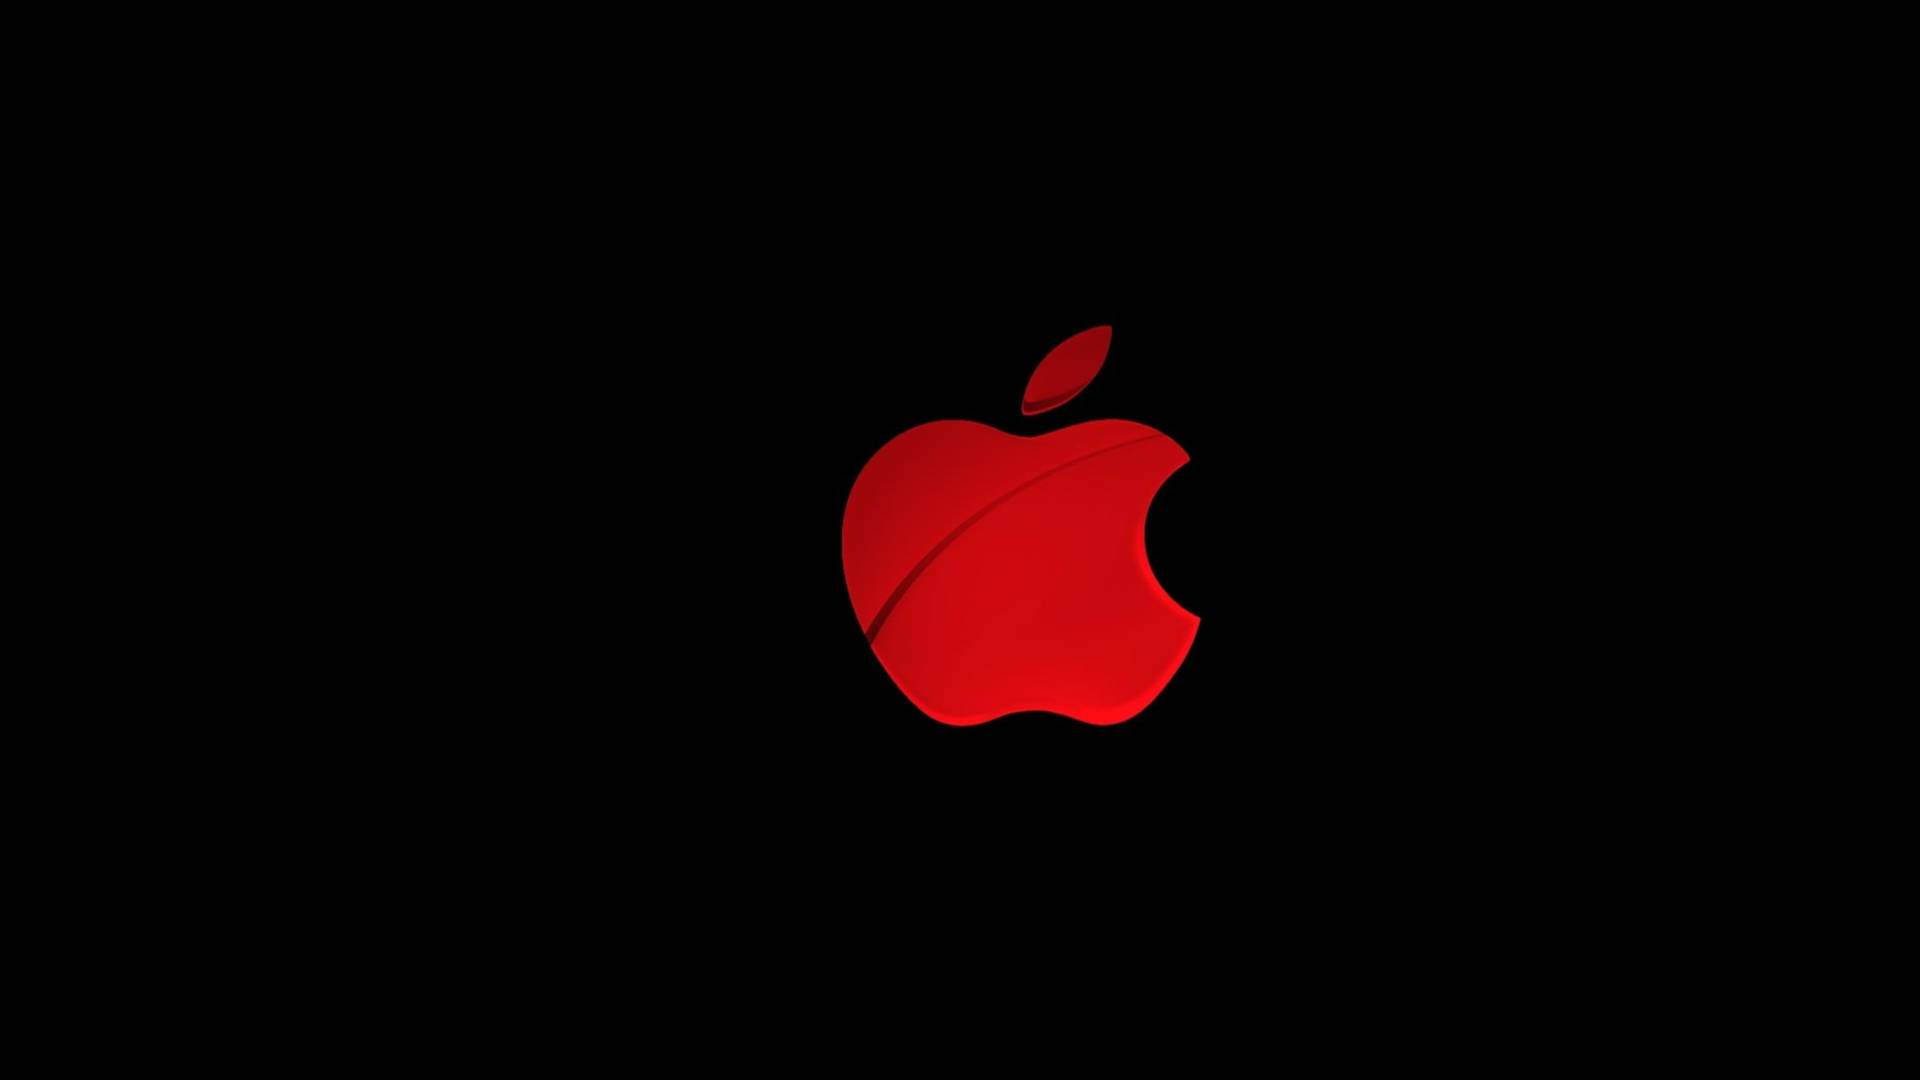 Apple 4k Ultra Hd Red Logo